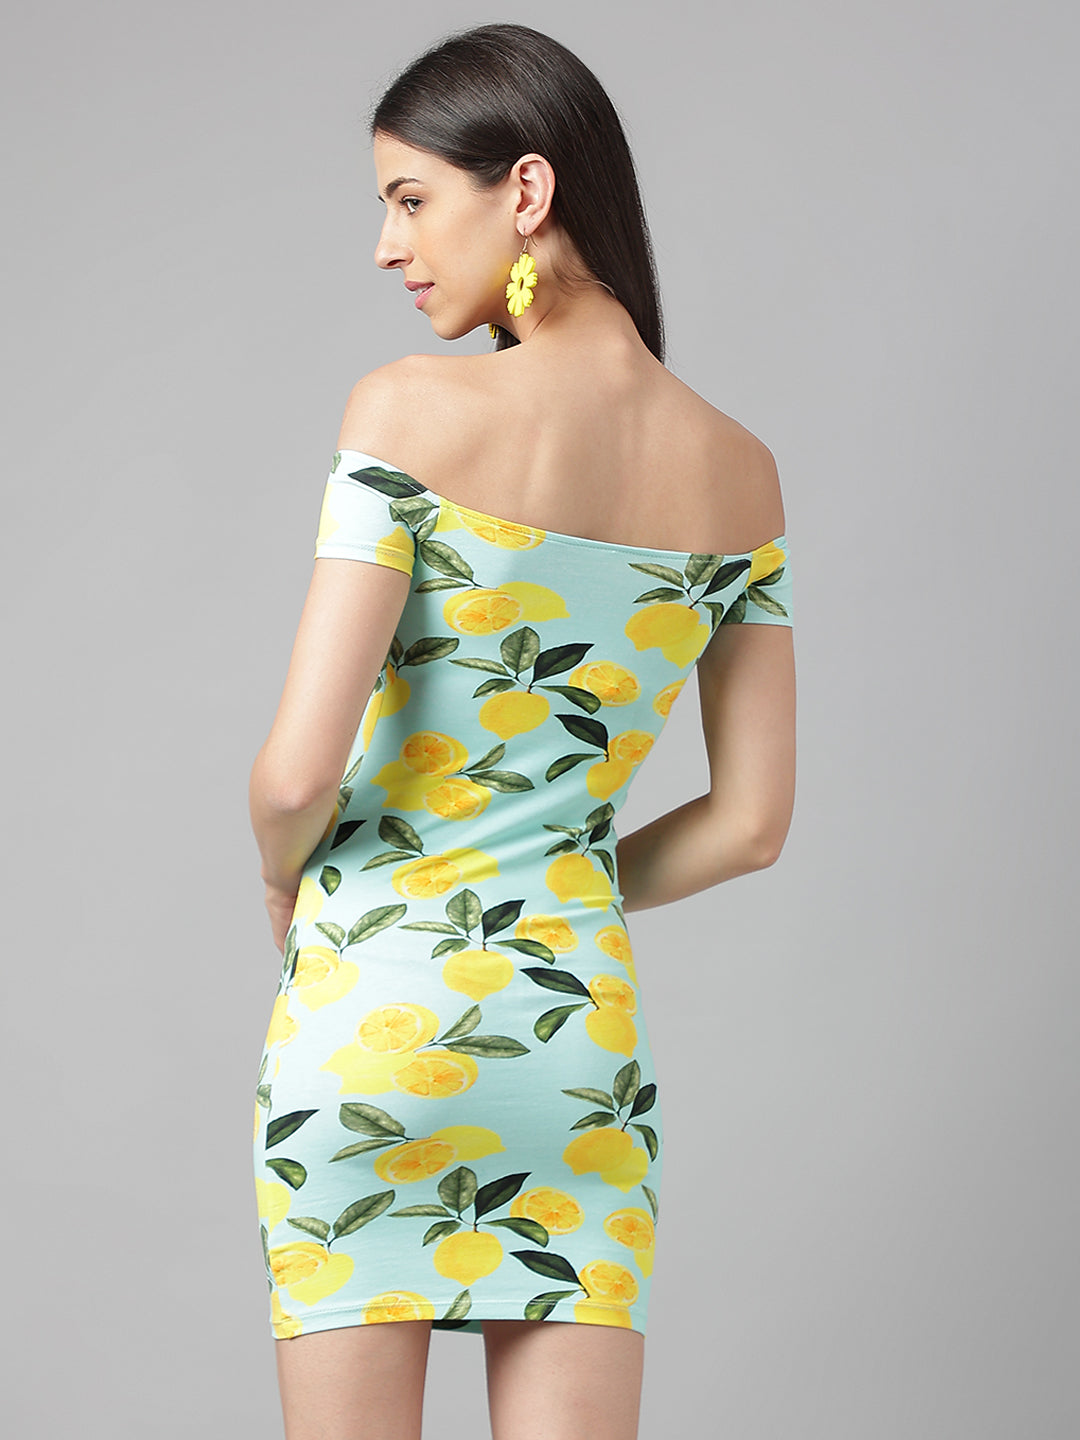 Lemon Print Off-The-Shoulder Dress